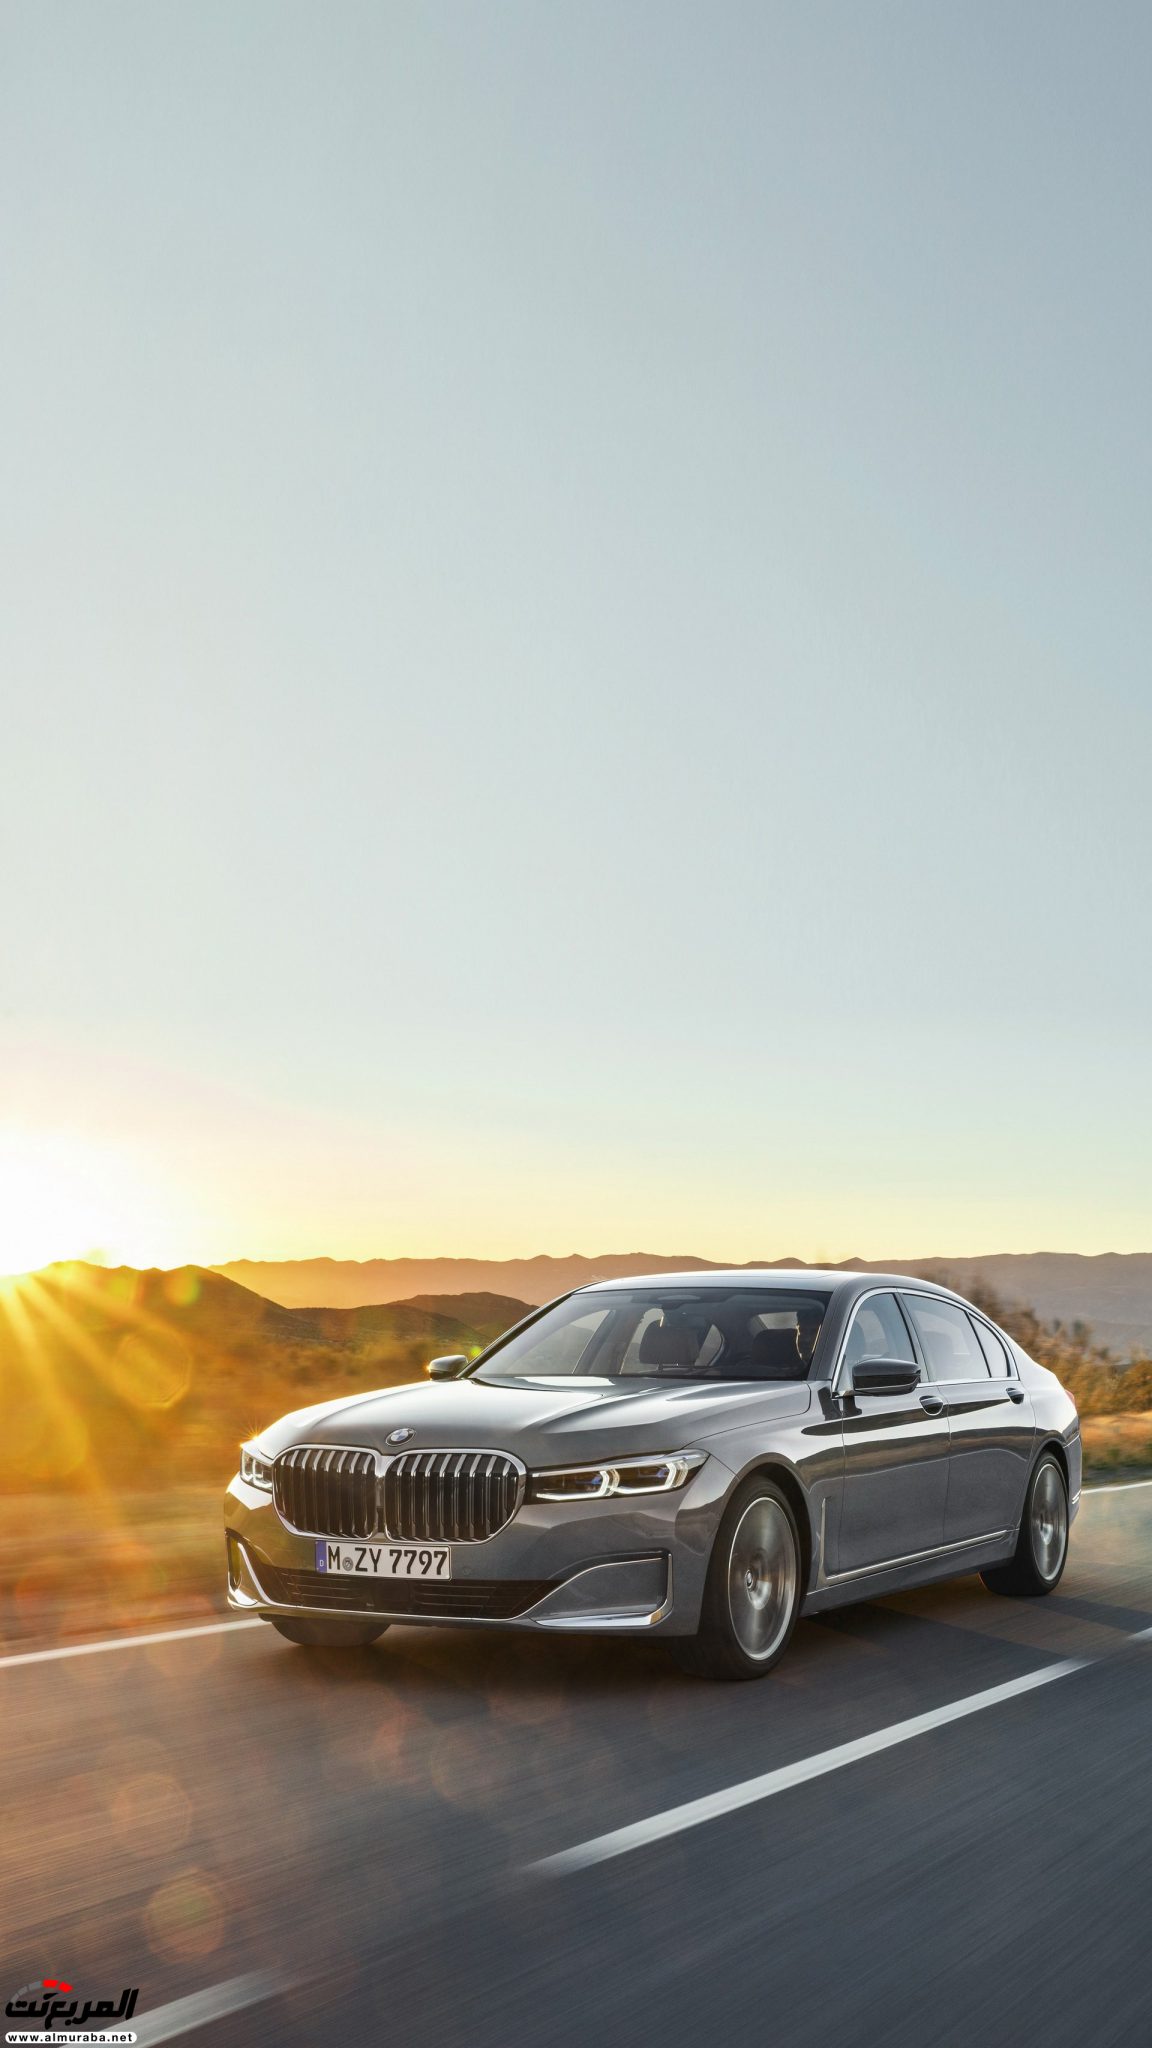 بي ام دبليو الفئة السابعة 2020 المحدثة تكشف نفسها رسمياً "صور ومواصفات" BMW 7 Series 248